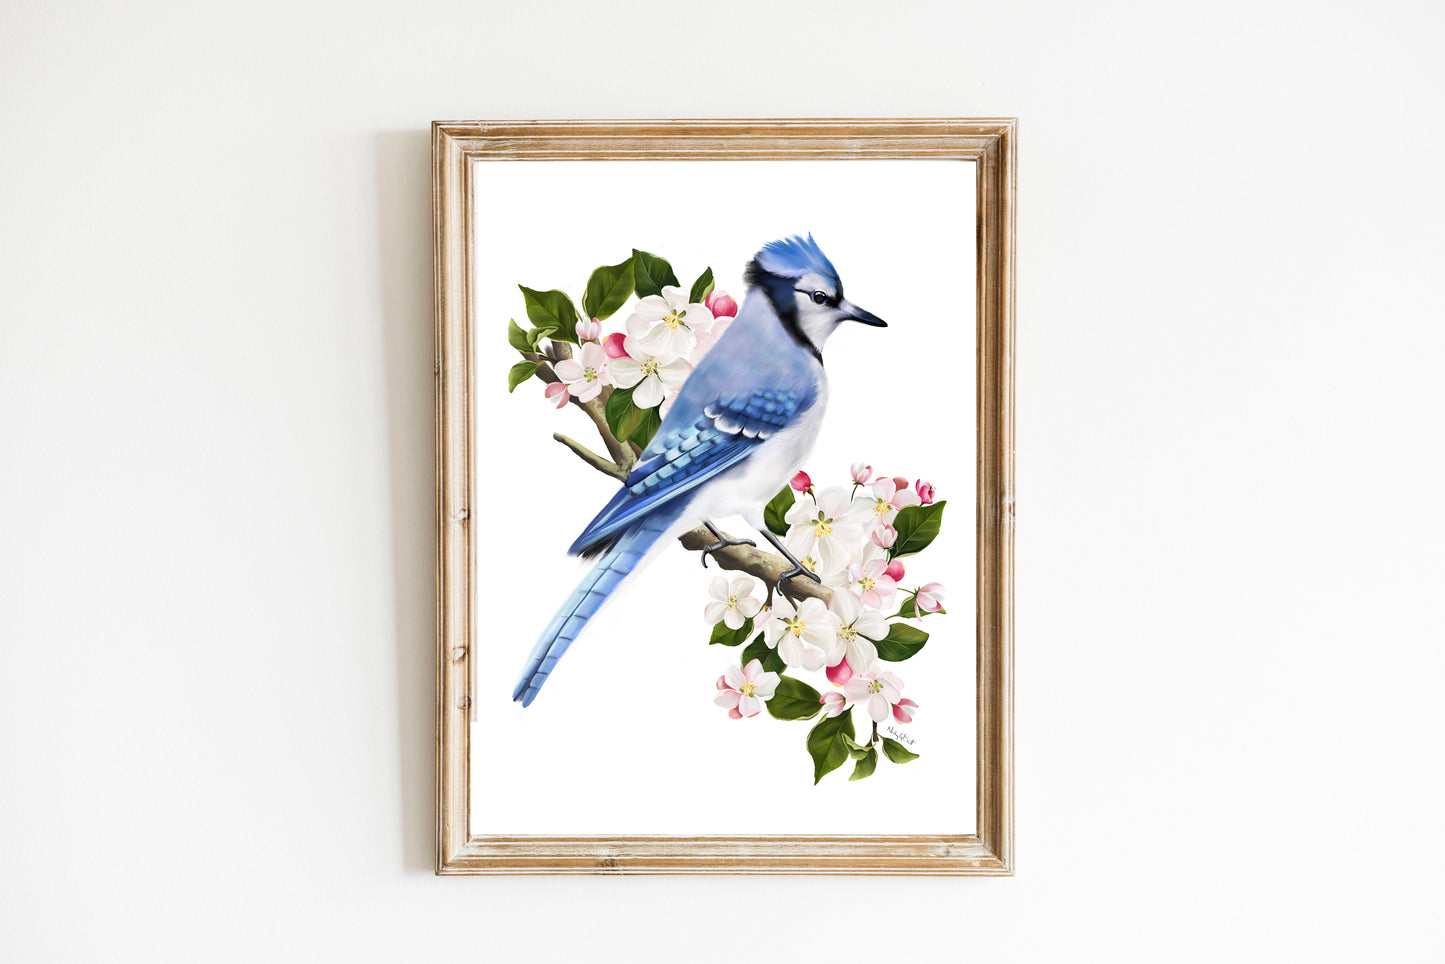 Blue Jay Bird on Apple Blossom Branch Art Print